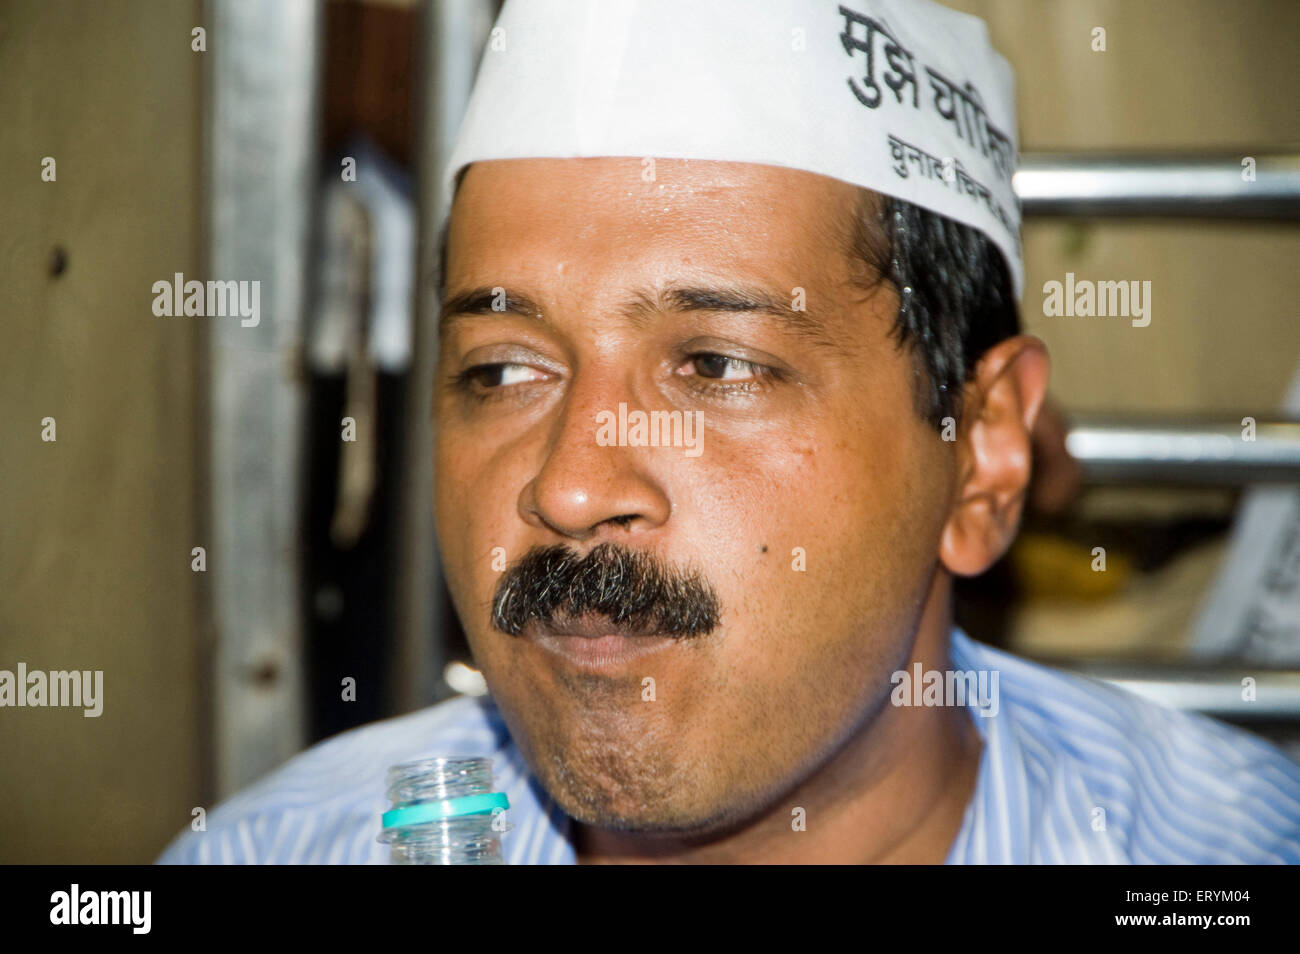 Aam Aadmi Arvind Kejriwal chef de parti dans l'eau potable train local à Mumbai Maharashtra Inde Asie Banque D'Images